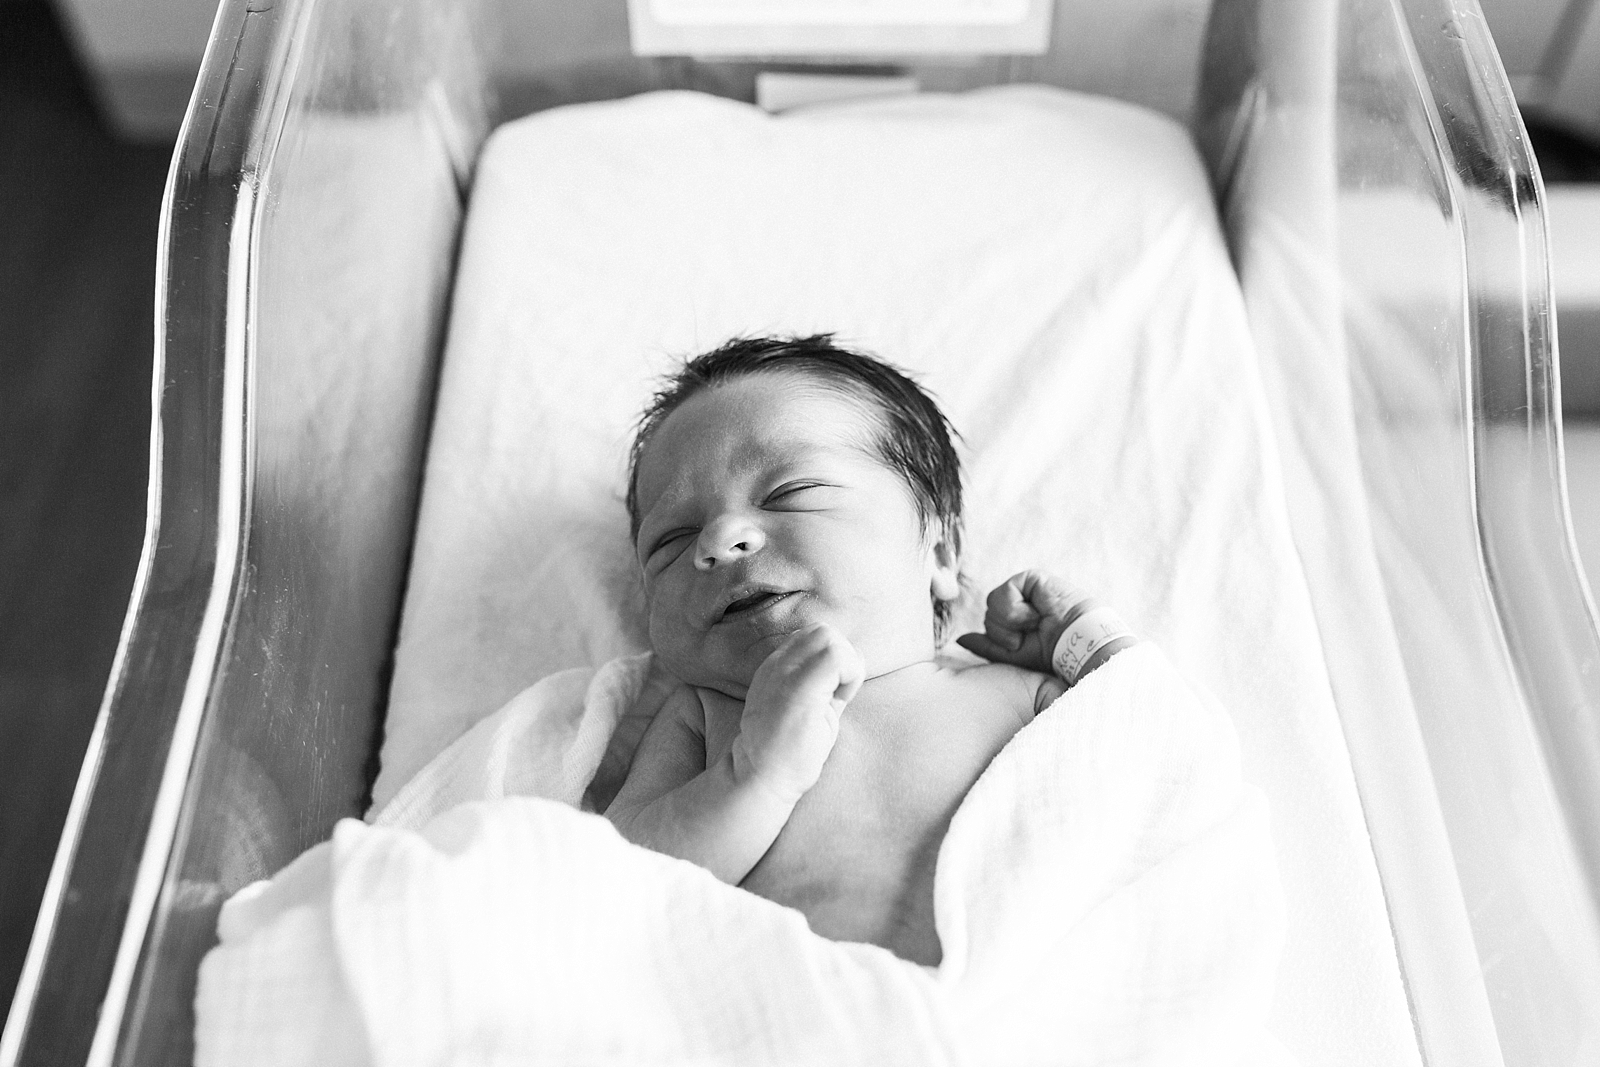 Use Embedded Keywords, spartanburg newborn photographer, asheville newborn photographer